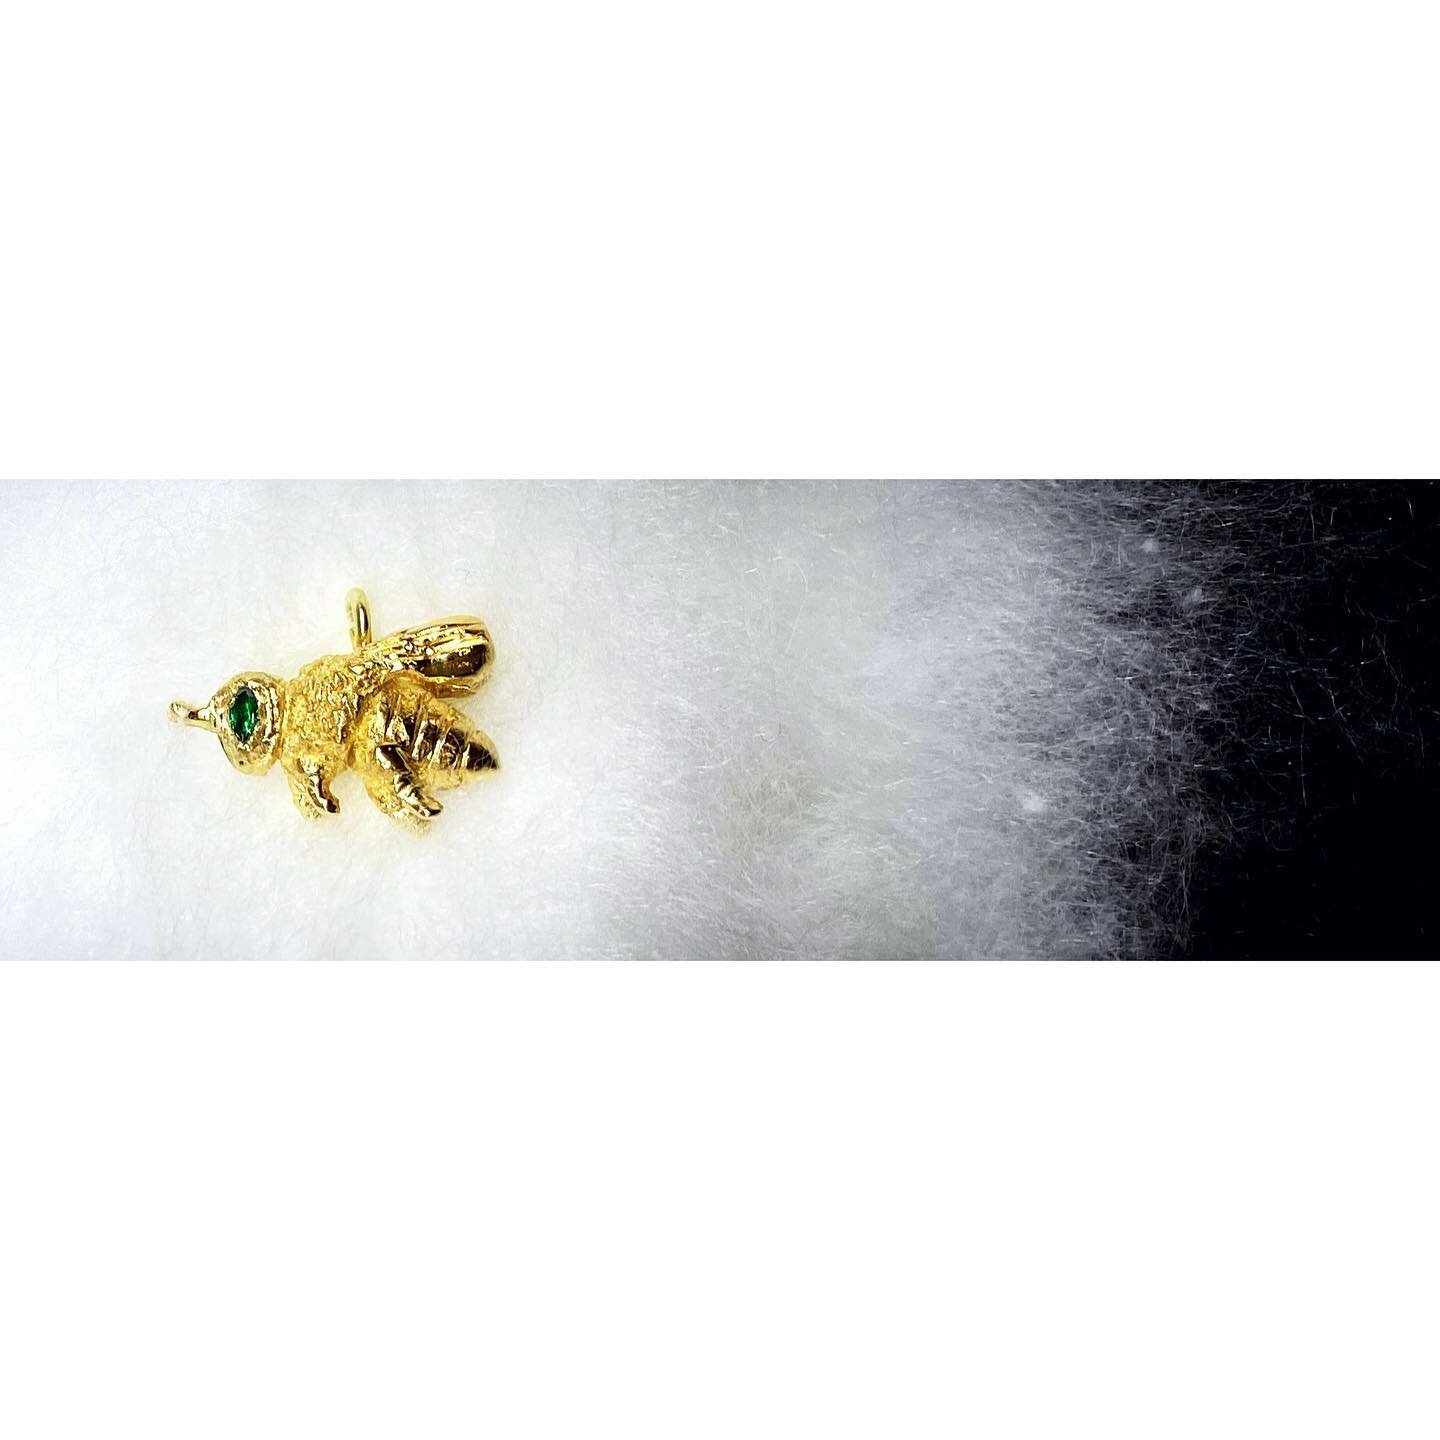 B E E H A P P Y .
.
.
.
#bees #charms #perfectgift #gold #emeralds #handcarved #handmade #schnitzerei #goldsmith #goldschmiede #goldschmiedin #handcrafted #handcraftedjewellry #kunsthandwerk #handwerk #wien #vienna #1010 #1010vienna #VIE #details #je